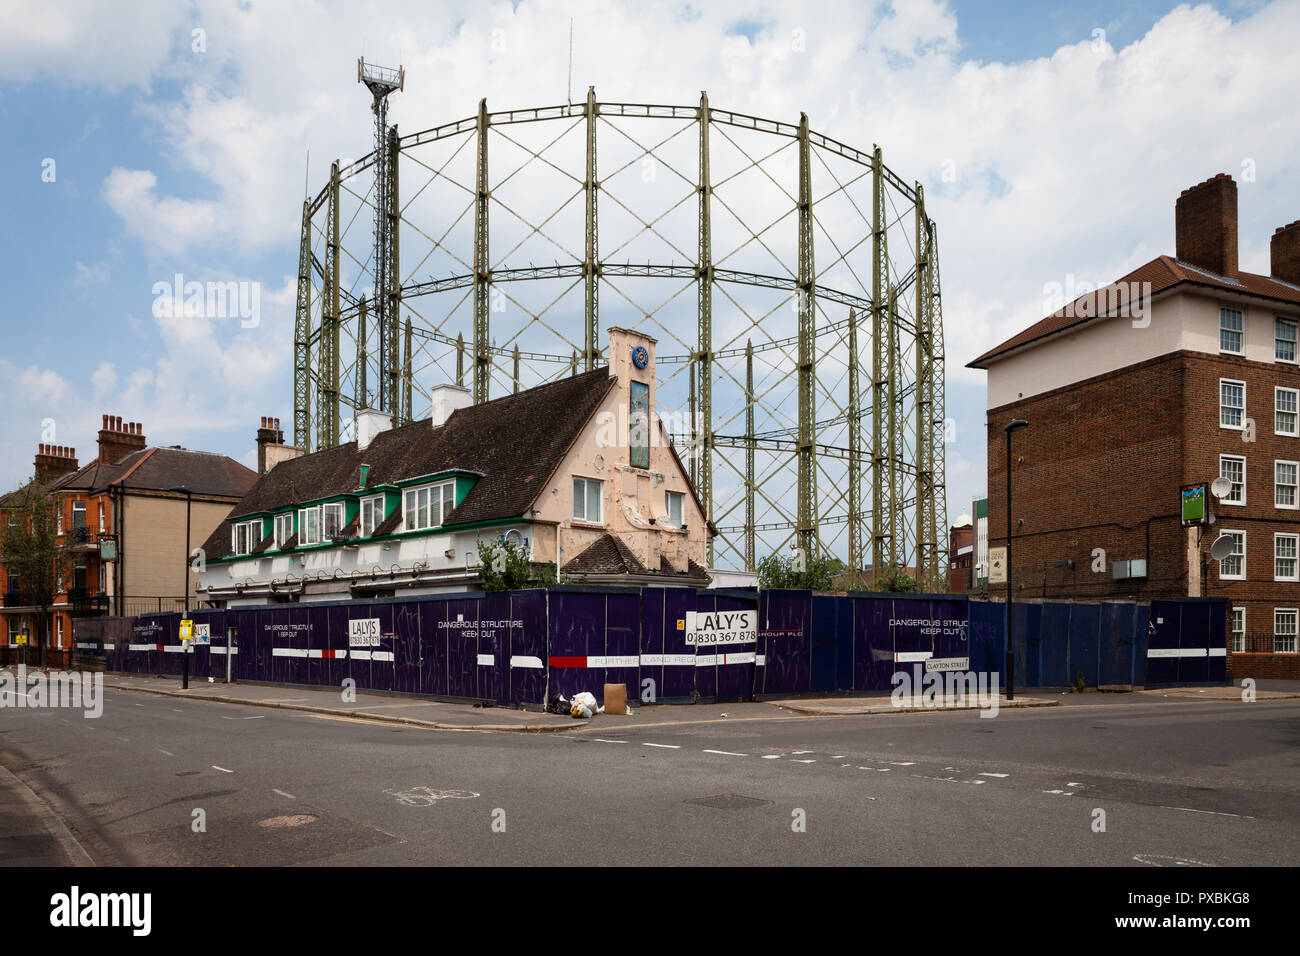 Abbandonata e decadendo Il Cricketers Pub accanto a Kennington Oval Cricket Ground, London. Foto Stock